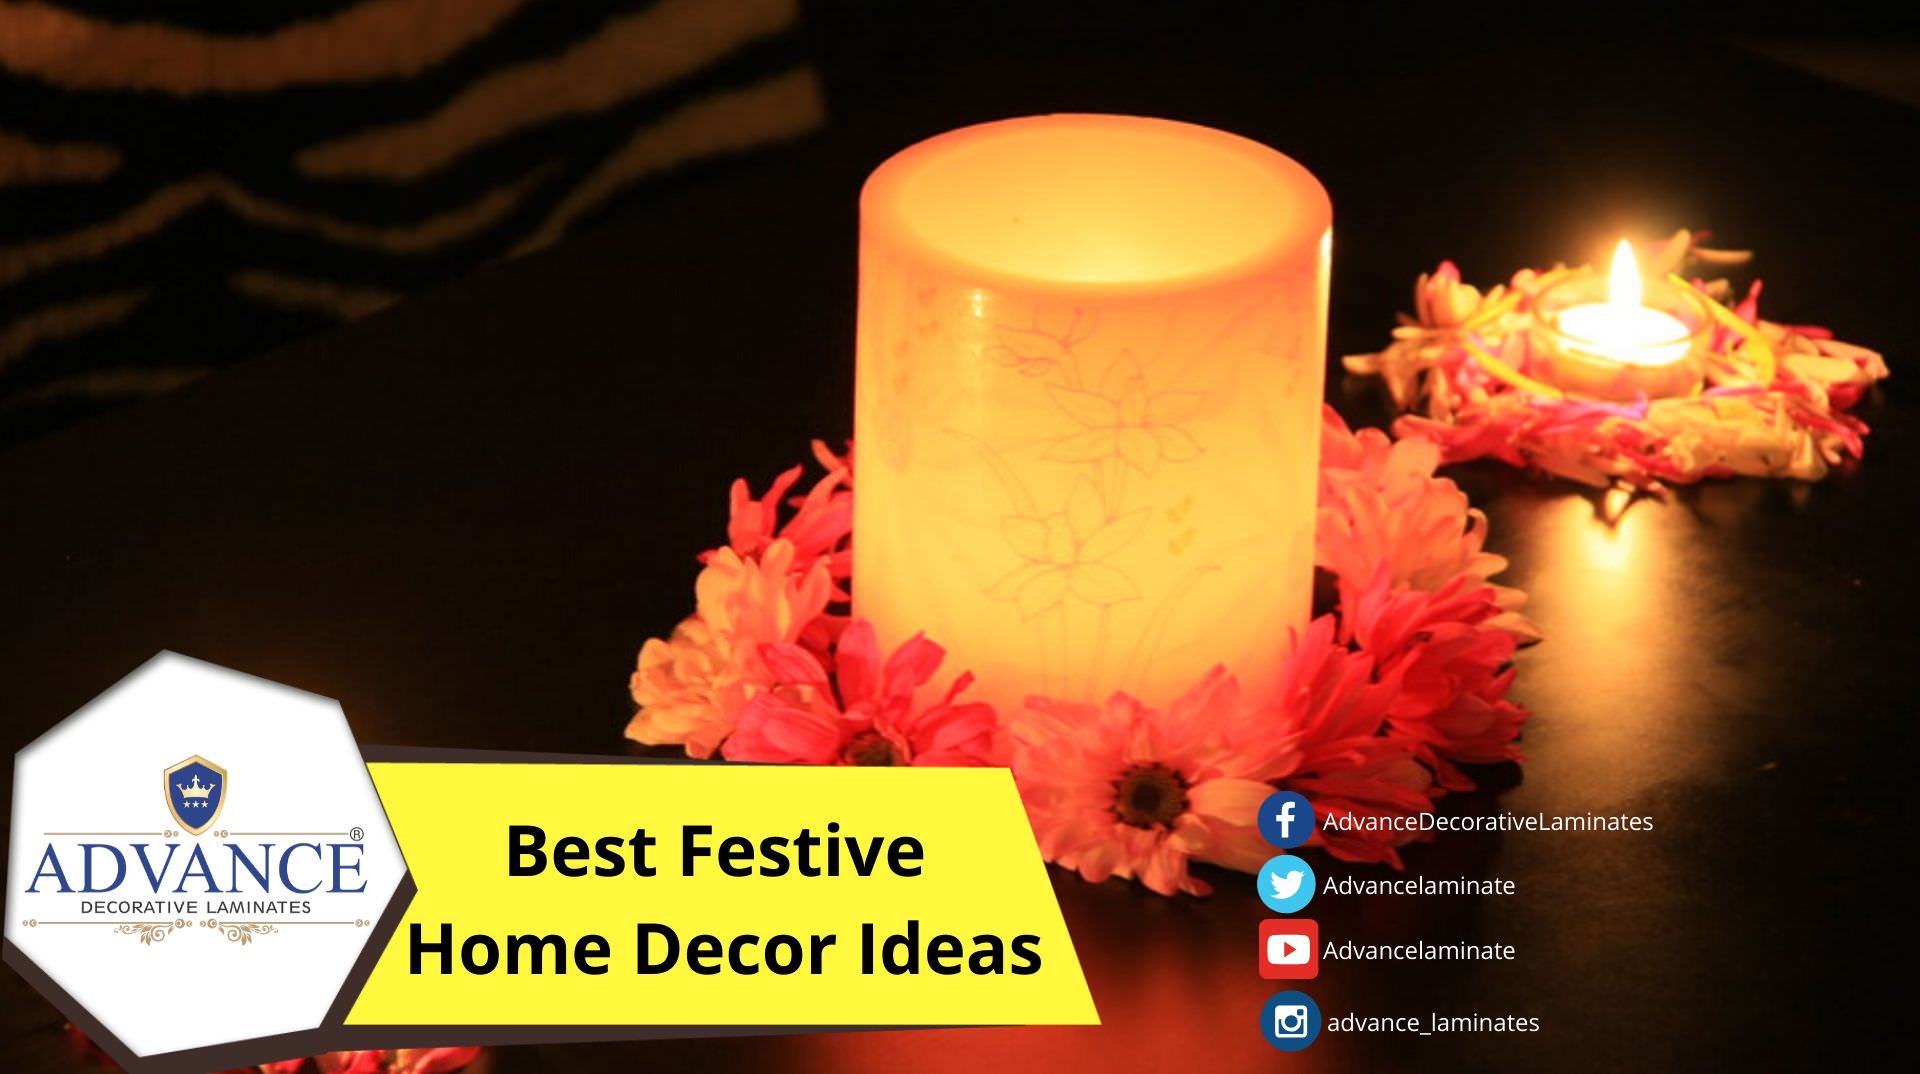 Best Festive Home Décor Ideas | Advance Decorative Laminates